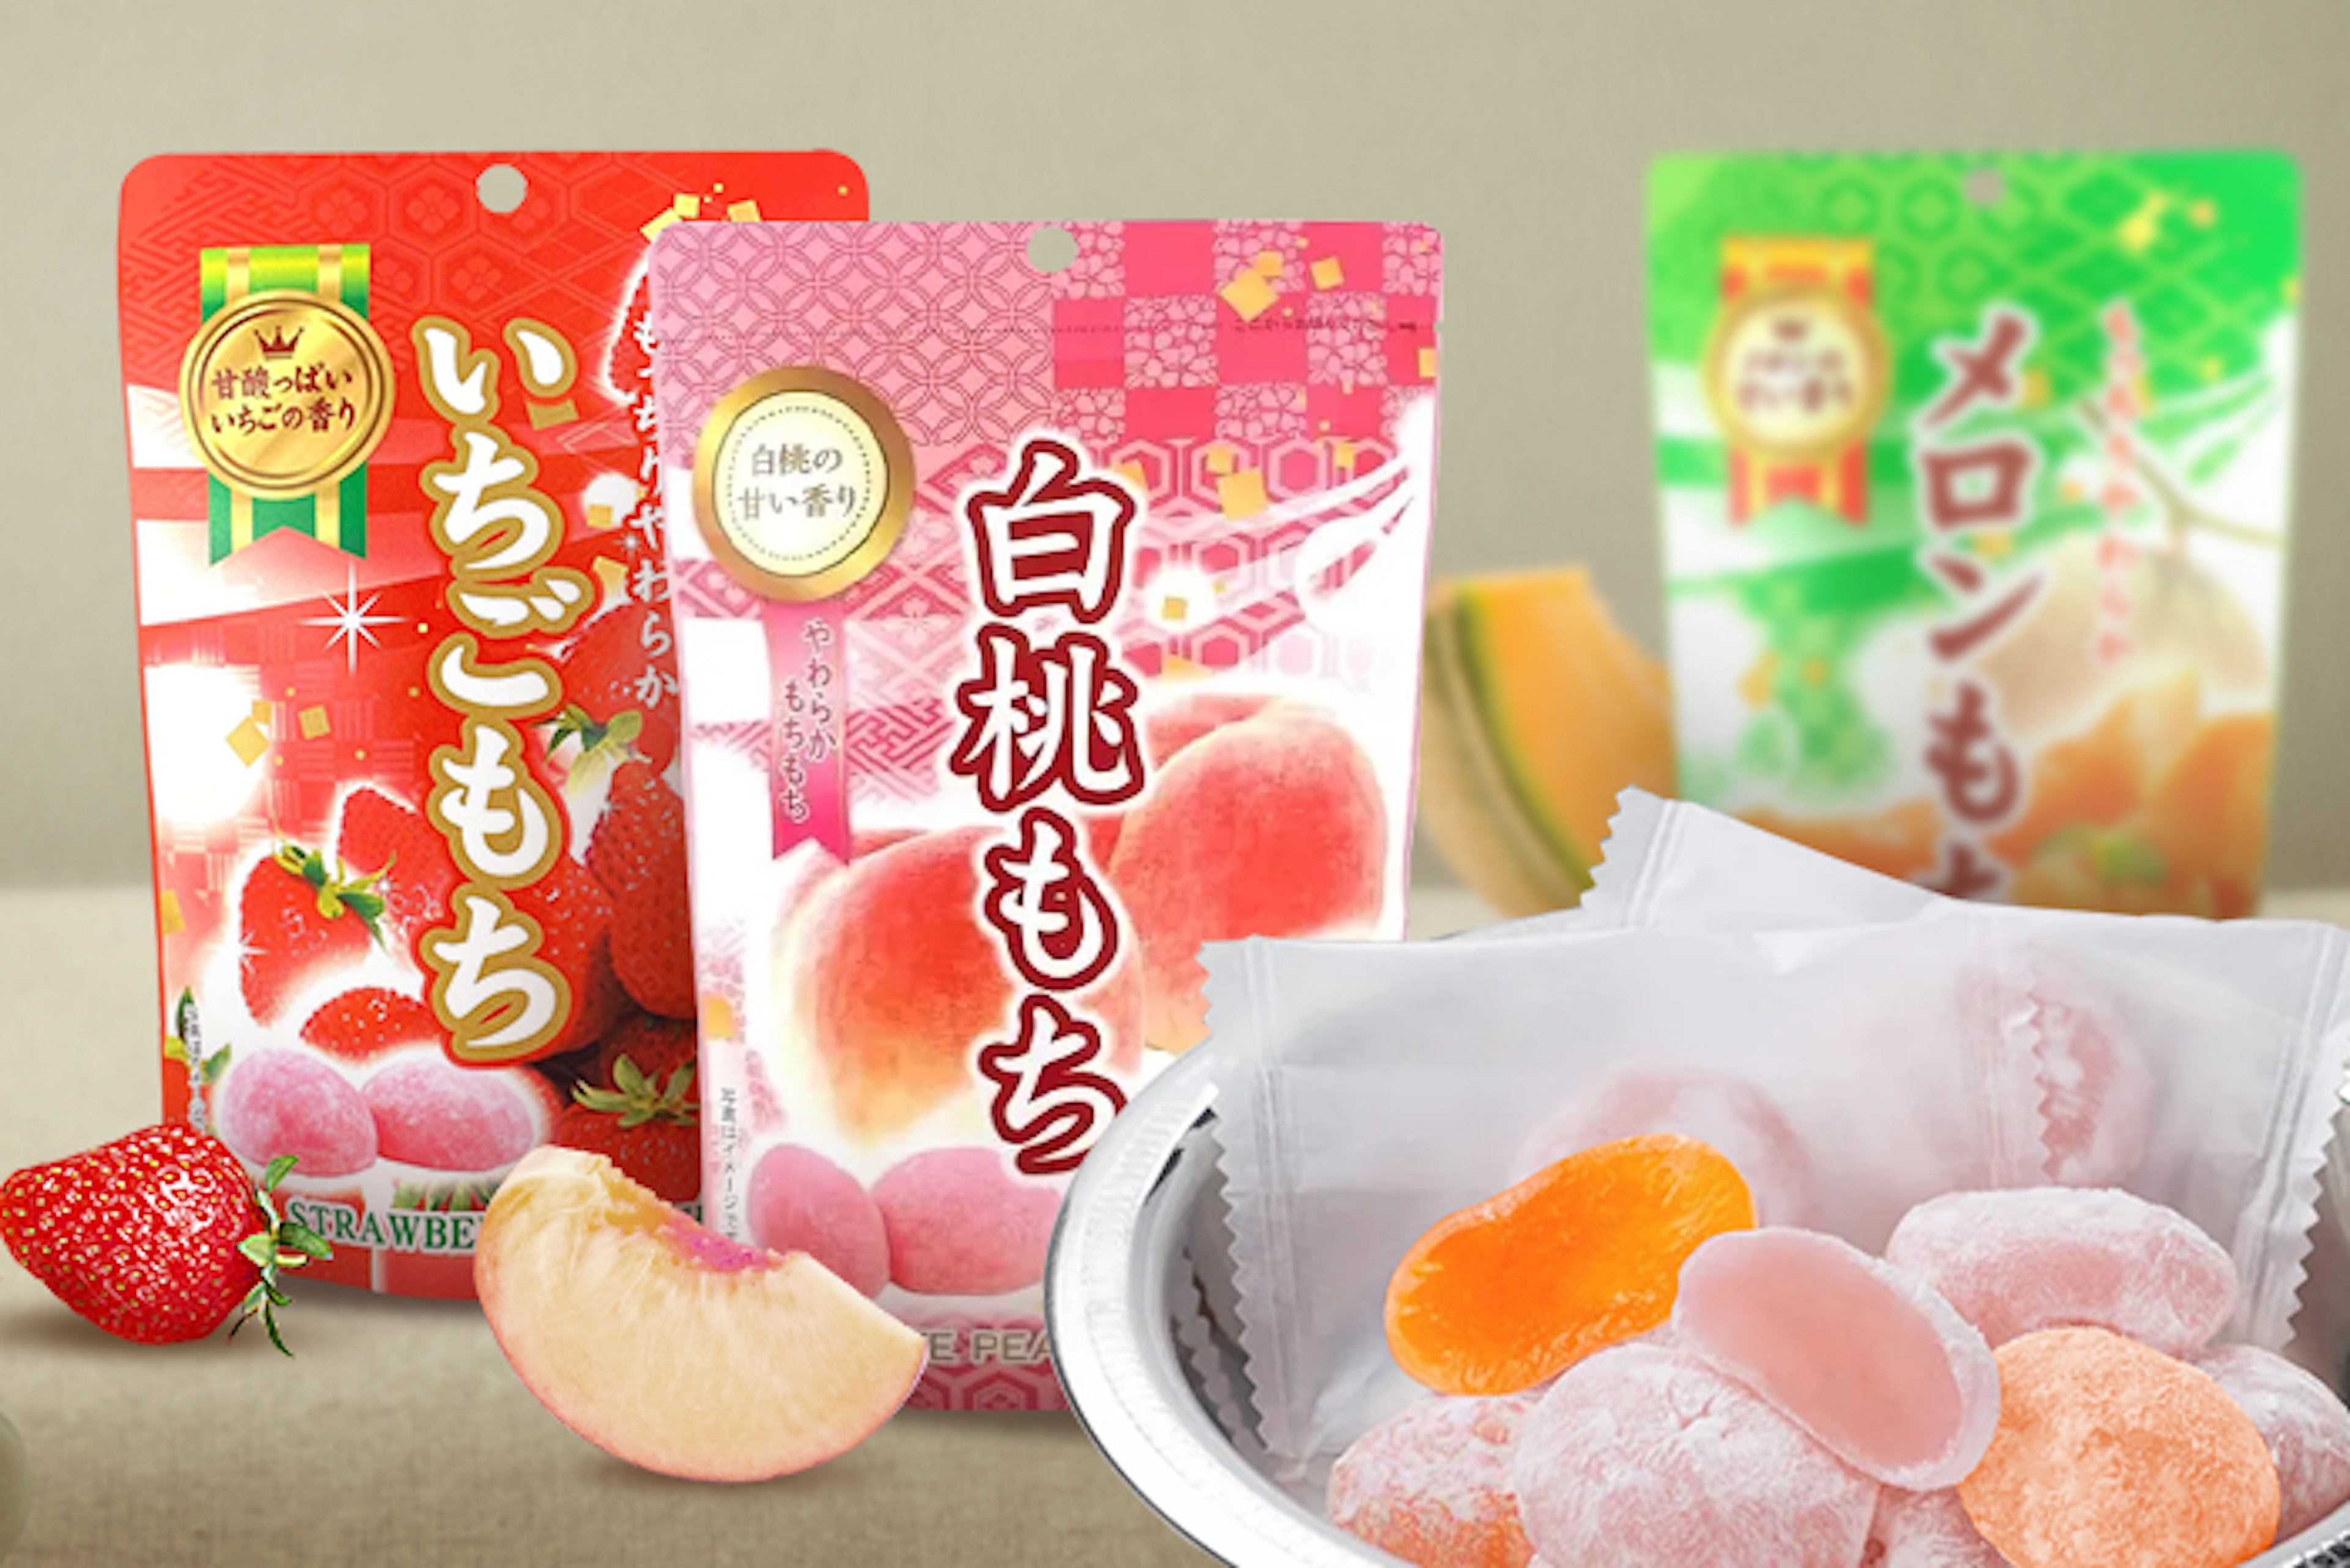 Vorderansicht der Seiki Mochi Erdbeere 130g Packung: Zeigt die bunte Verpackung mit einem Bild von saftigen Erdbeeren und den darin enthaltenen Mochi.